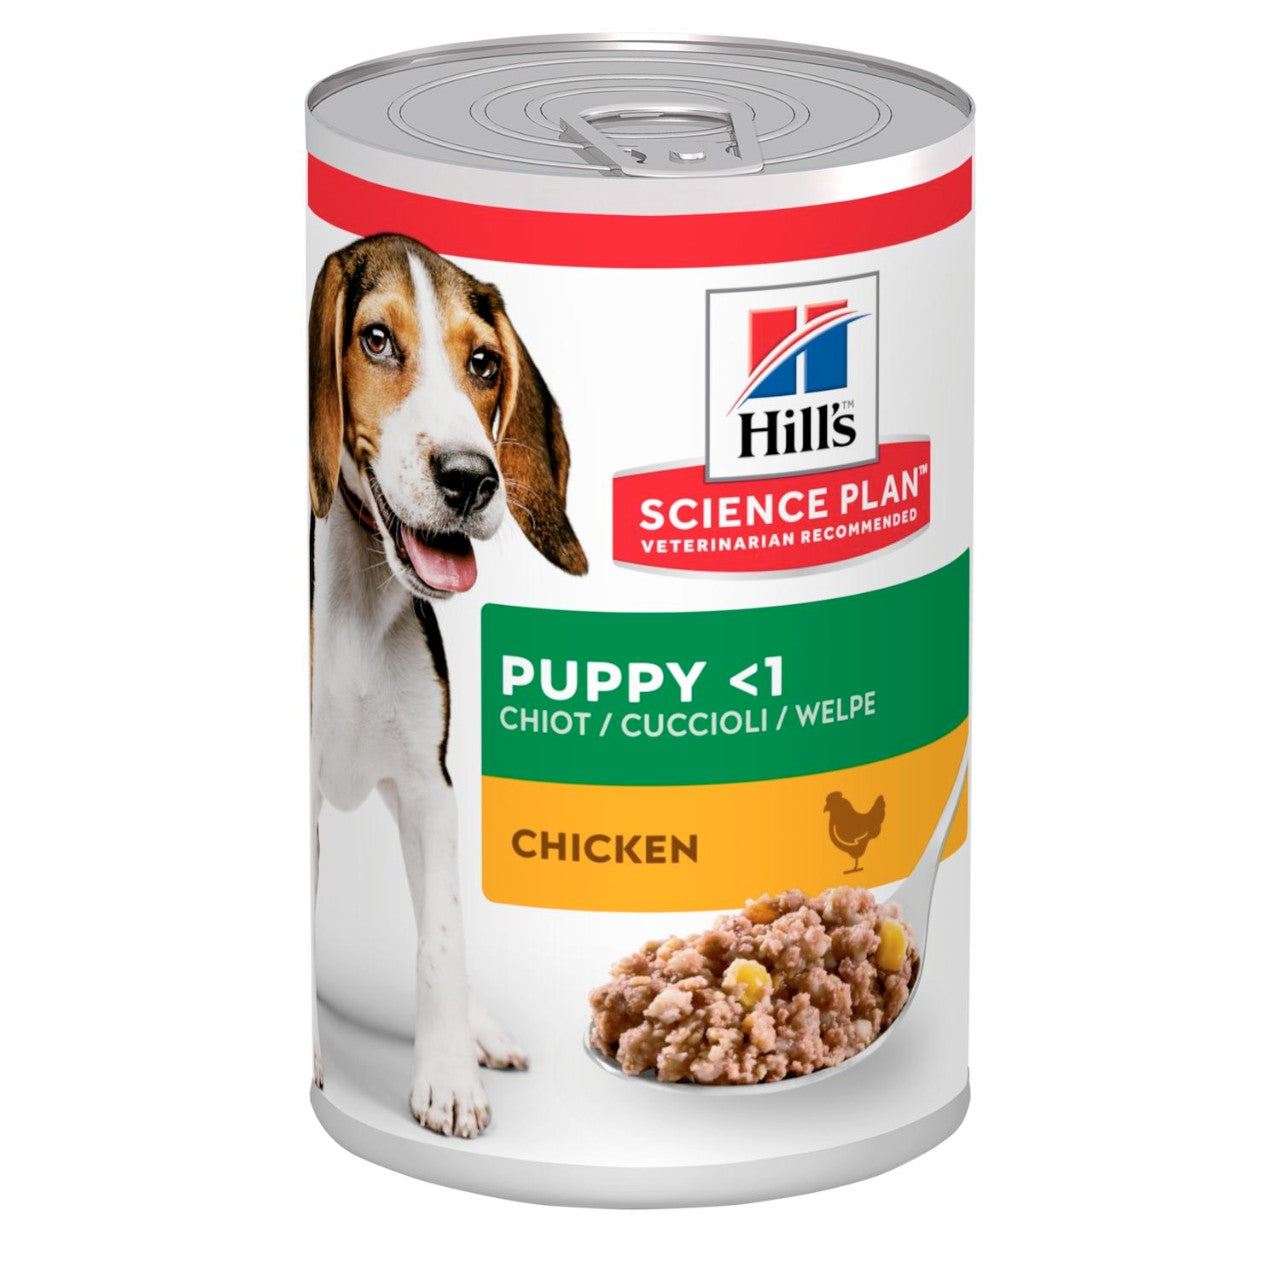 Hill's puppy chicken 370g - Pip & Pepper by Dierenspeciaalzaak Huysmans